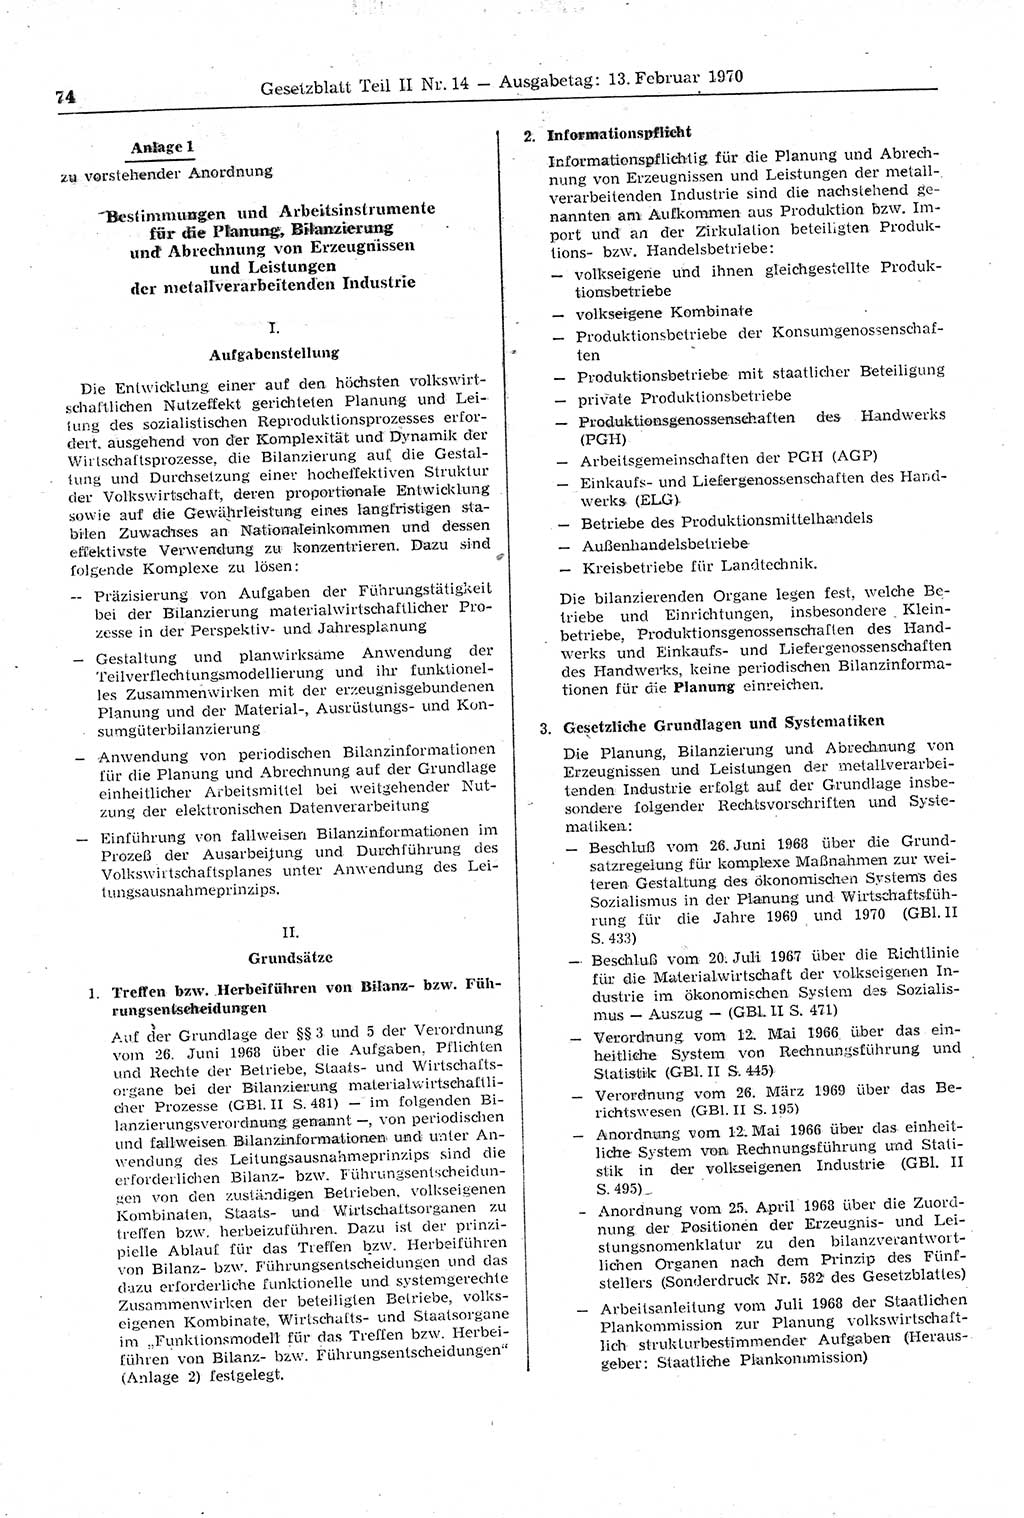 Gesetzblatt (GBl.) der Deutschen Demokratischen Republik (DDR) Teil ⅠⅠ 1970, Seite 74 (GBl. DDR ⅠⅠ 1970, S. 74)